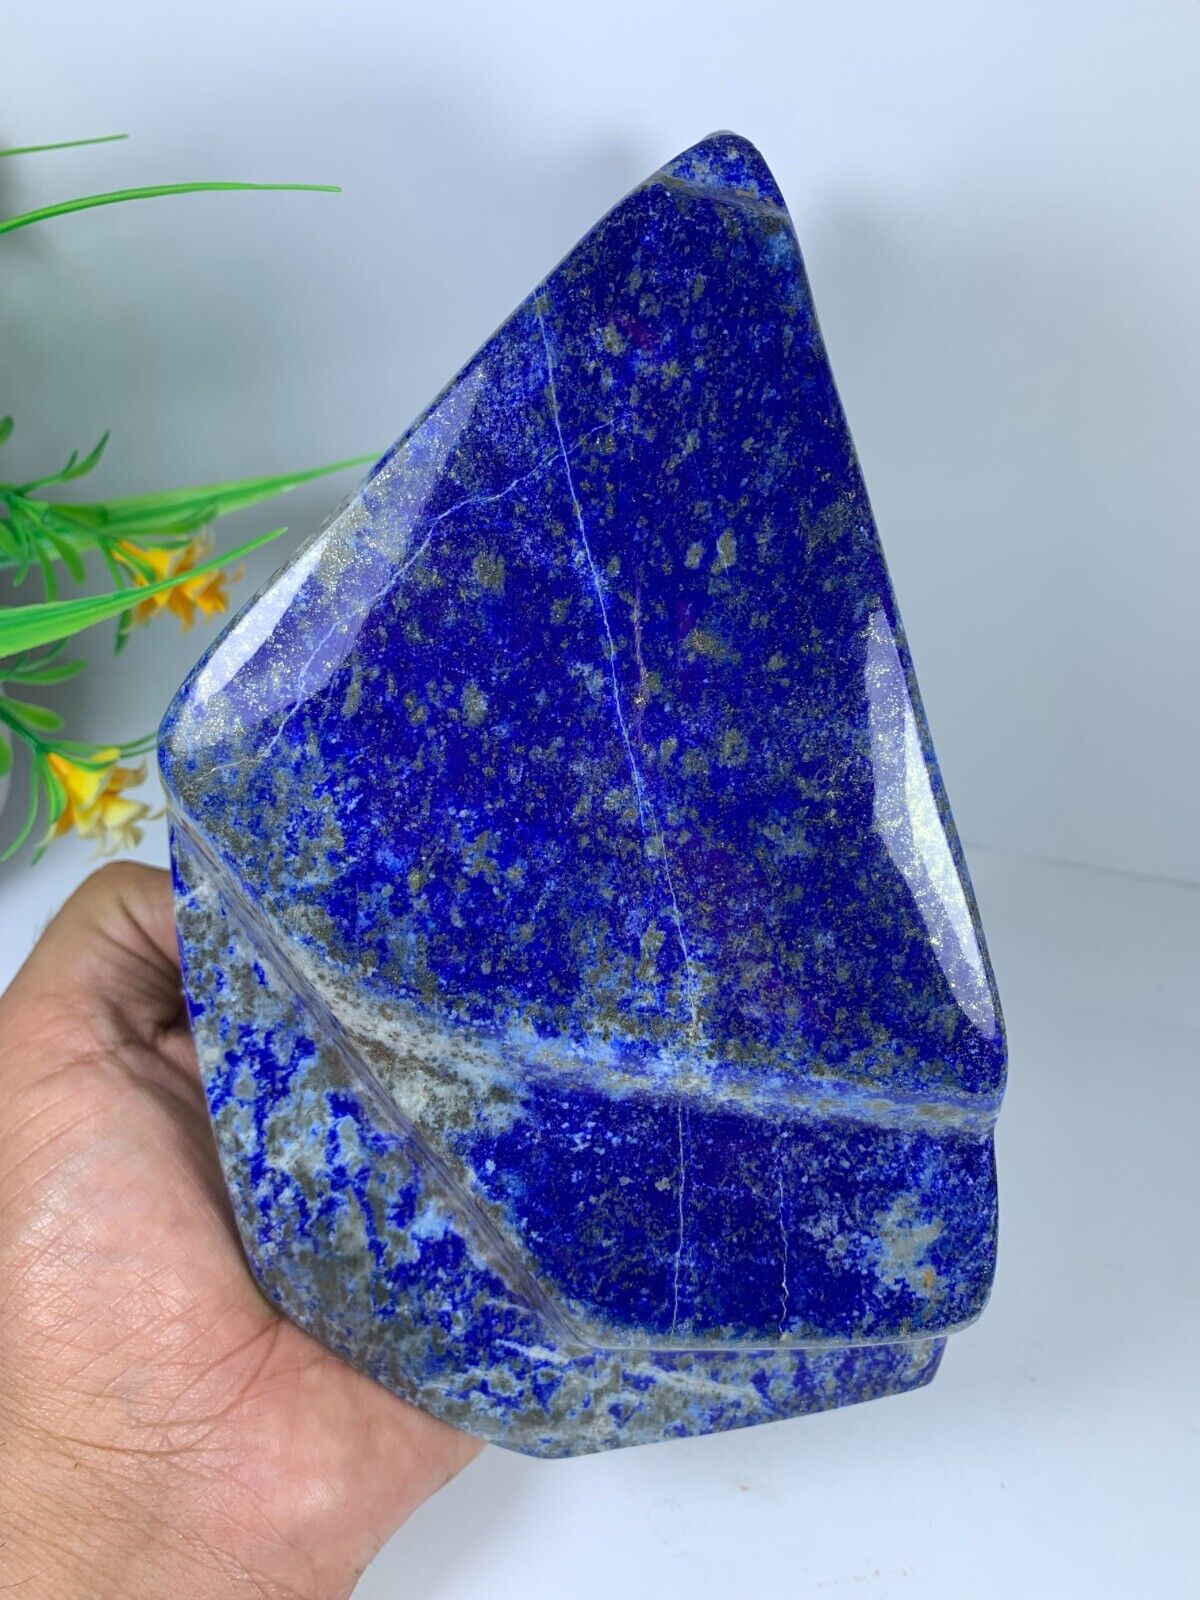 3kg Lapis Lazuli Freeform Polished Rough Tumble Healing Crystal Specimen Stone